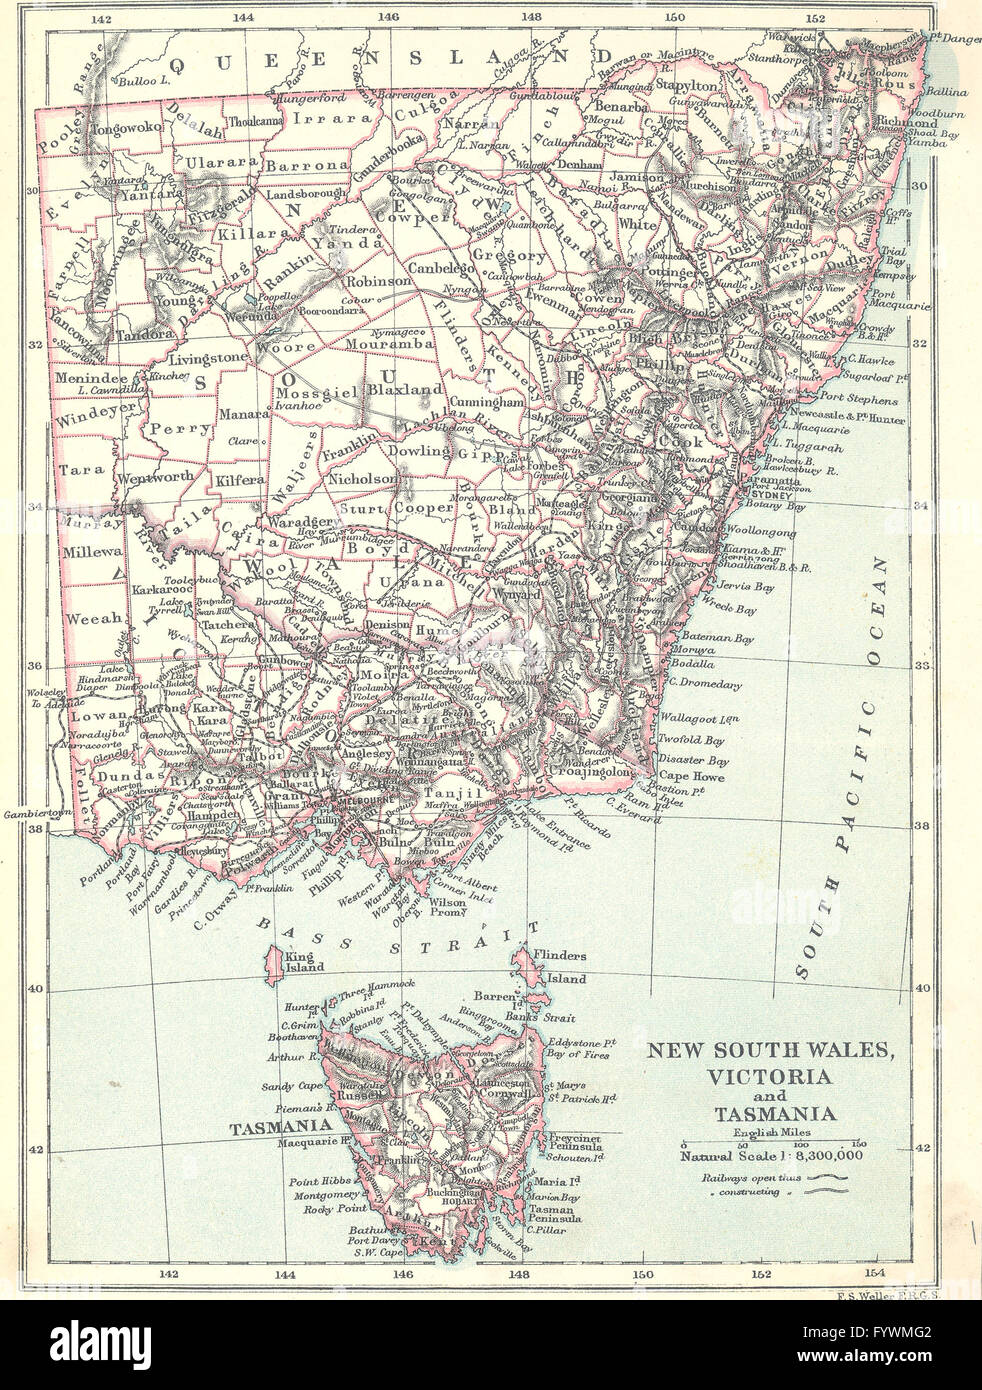 AUSTRALIA: NSW, Victoria & Tasmania, 1890 antique map Stock Photo